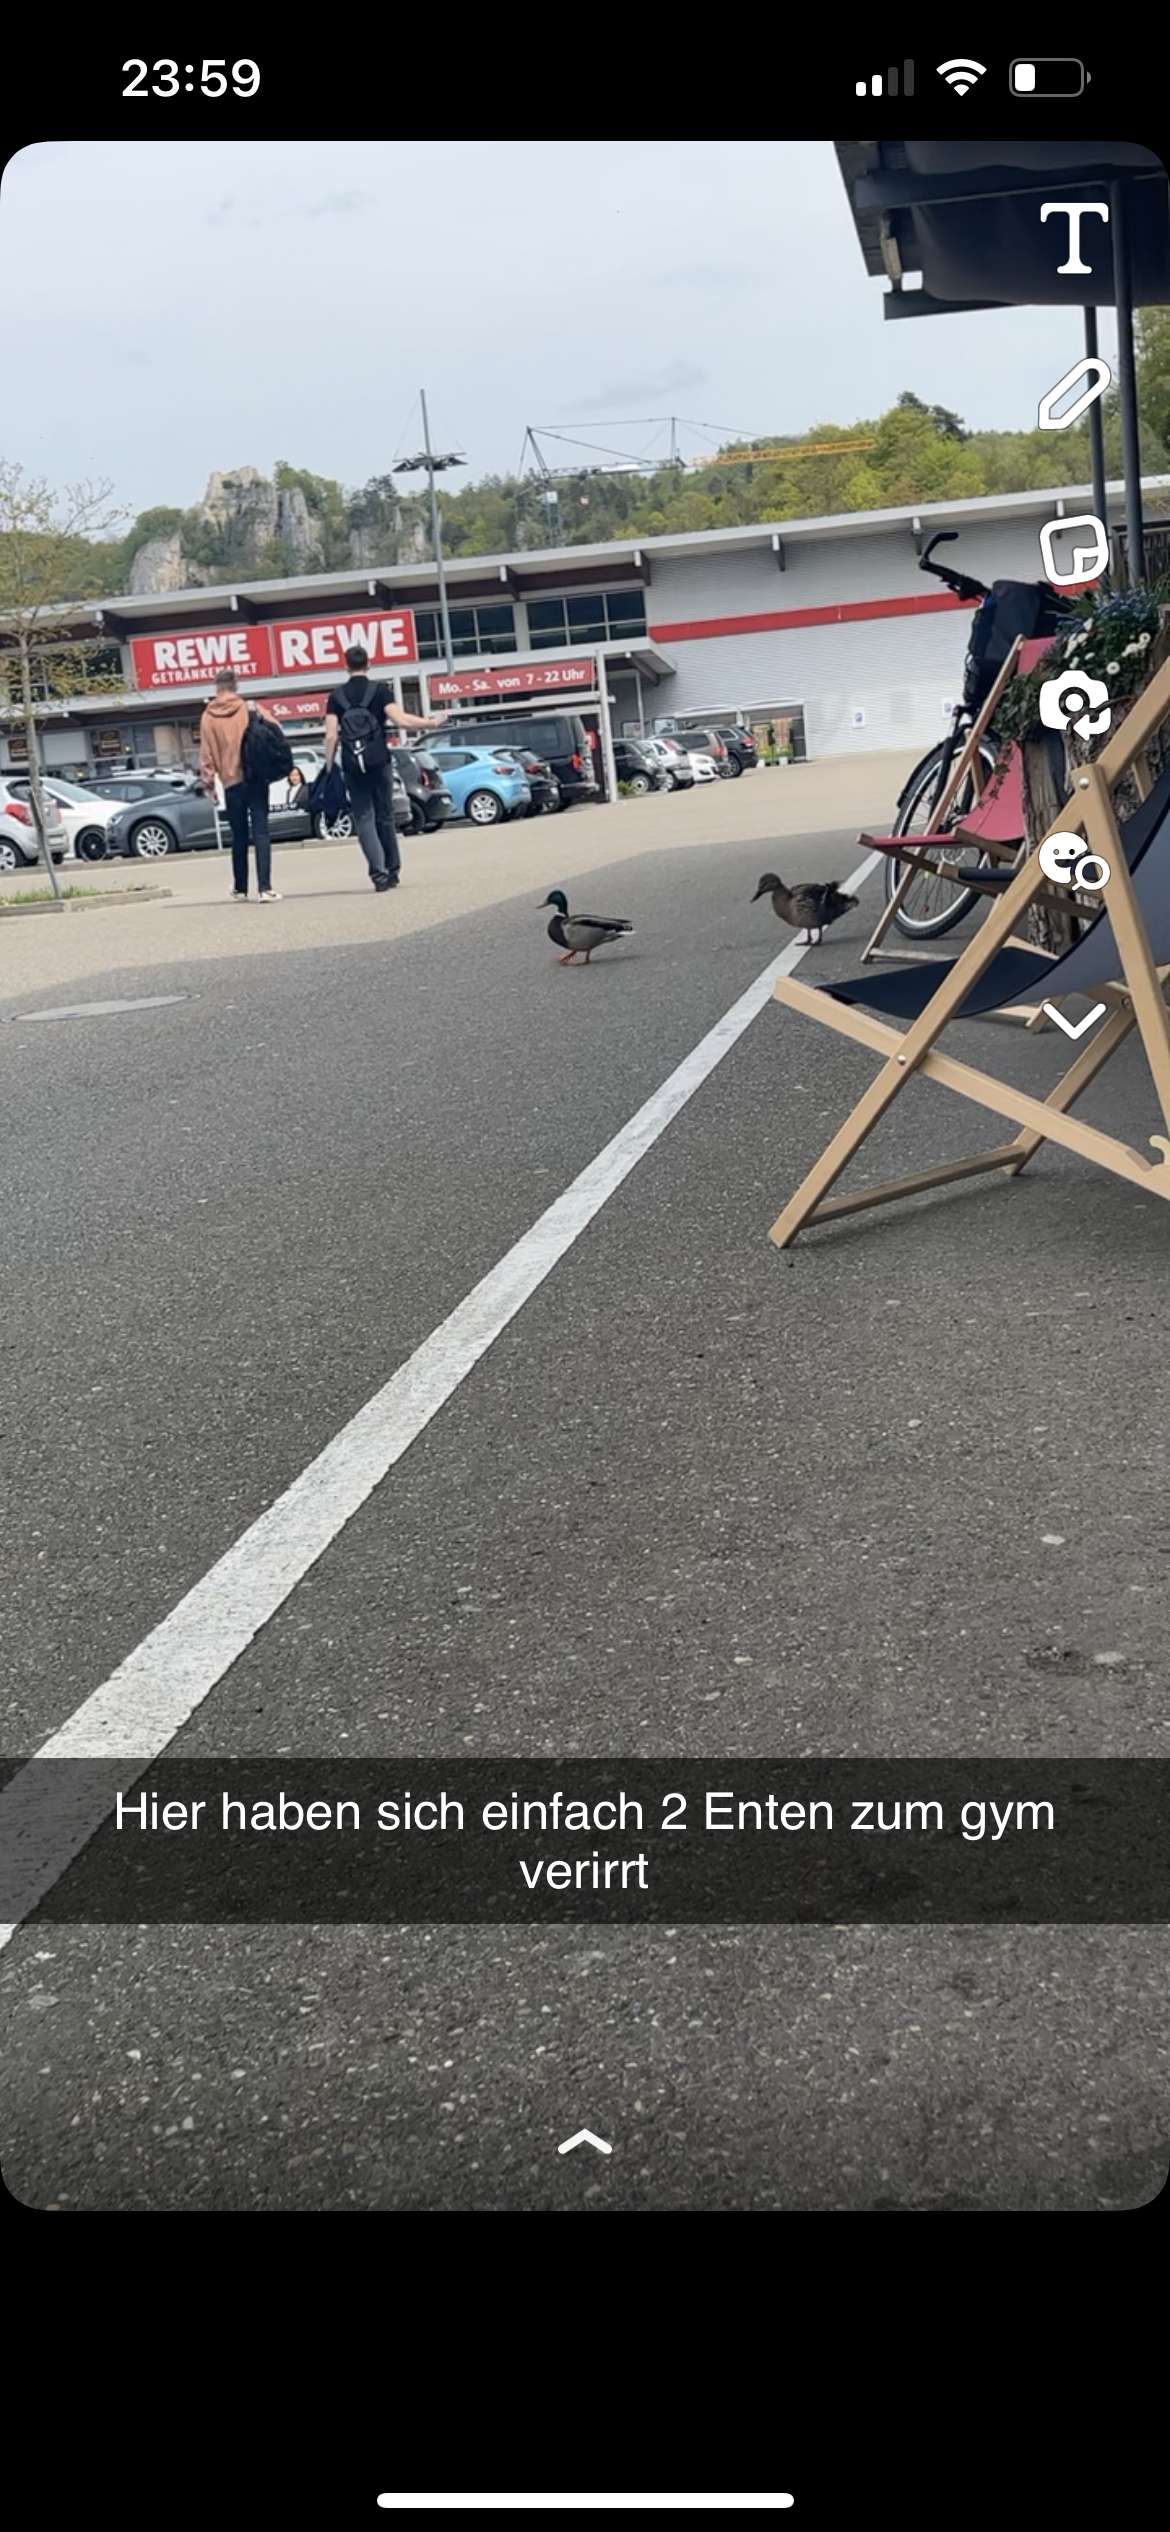 Ente steht vor gym